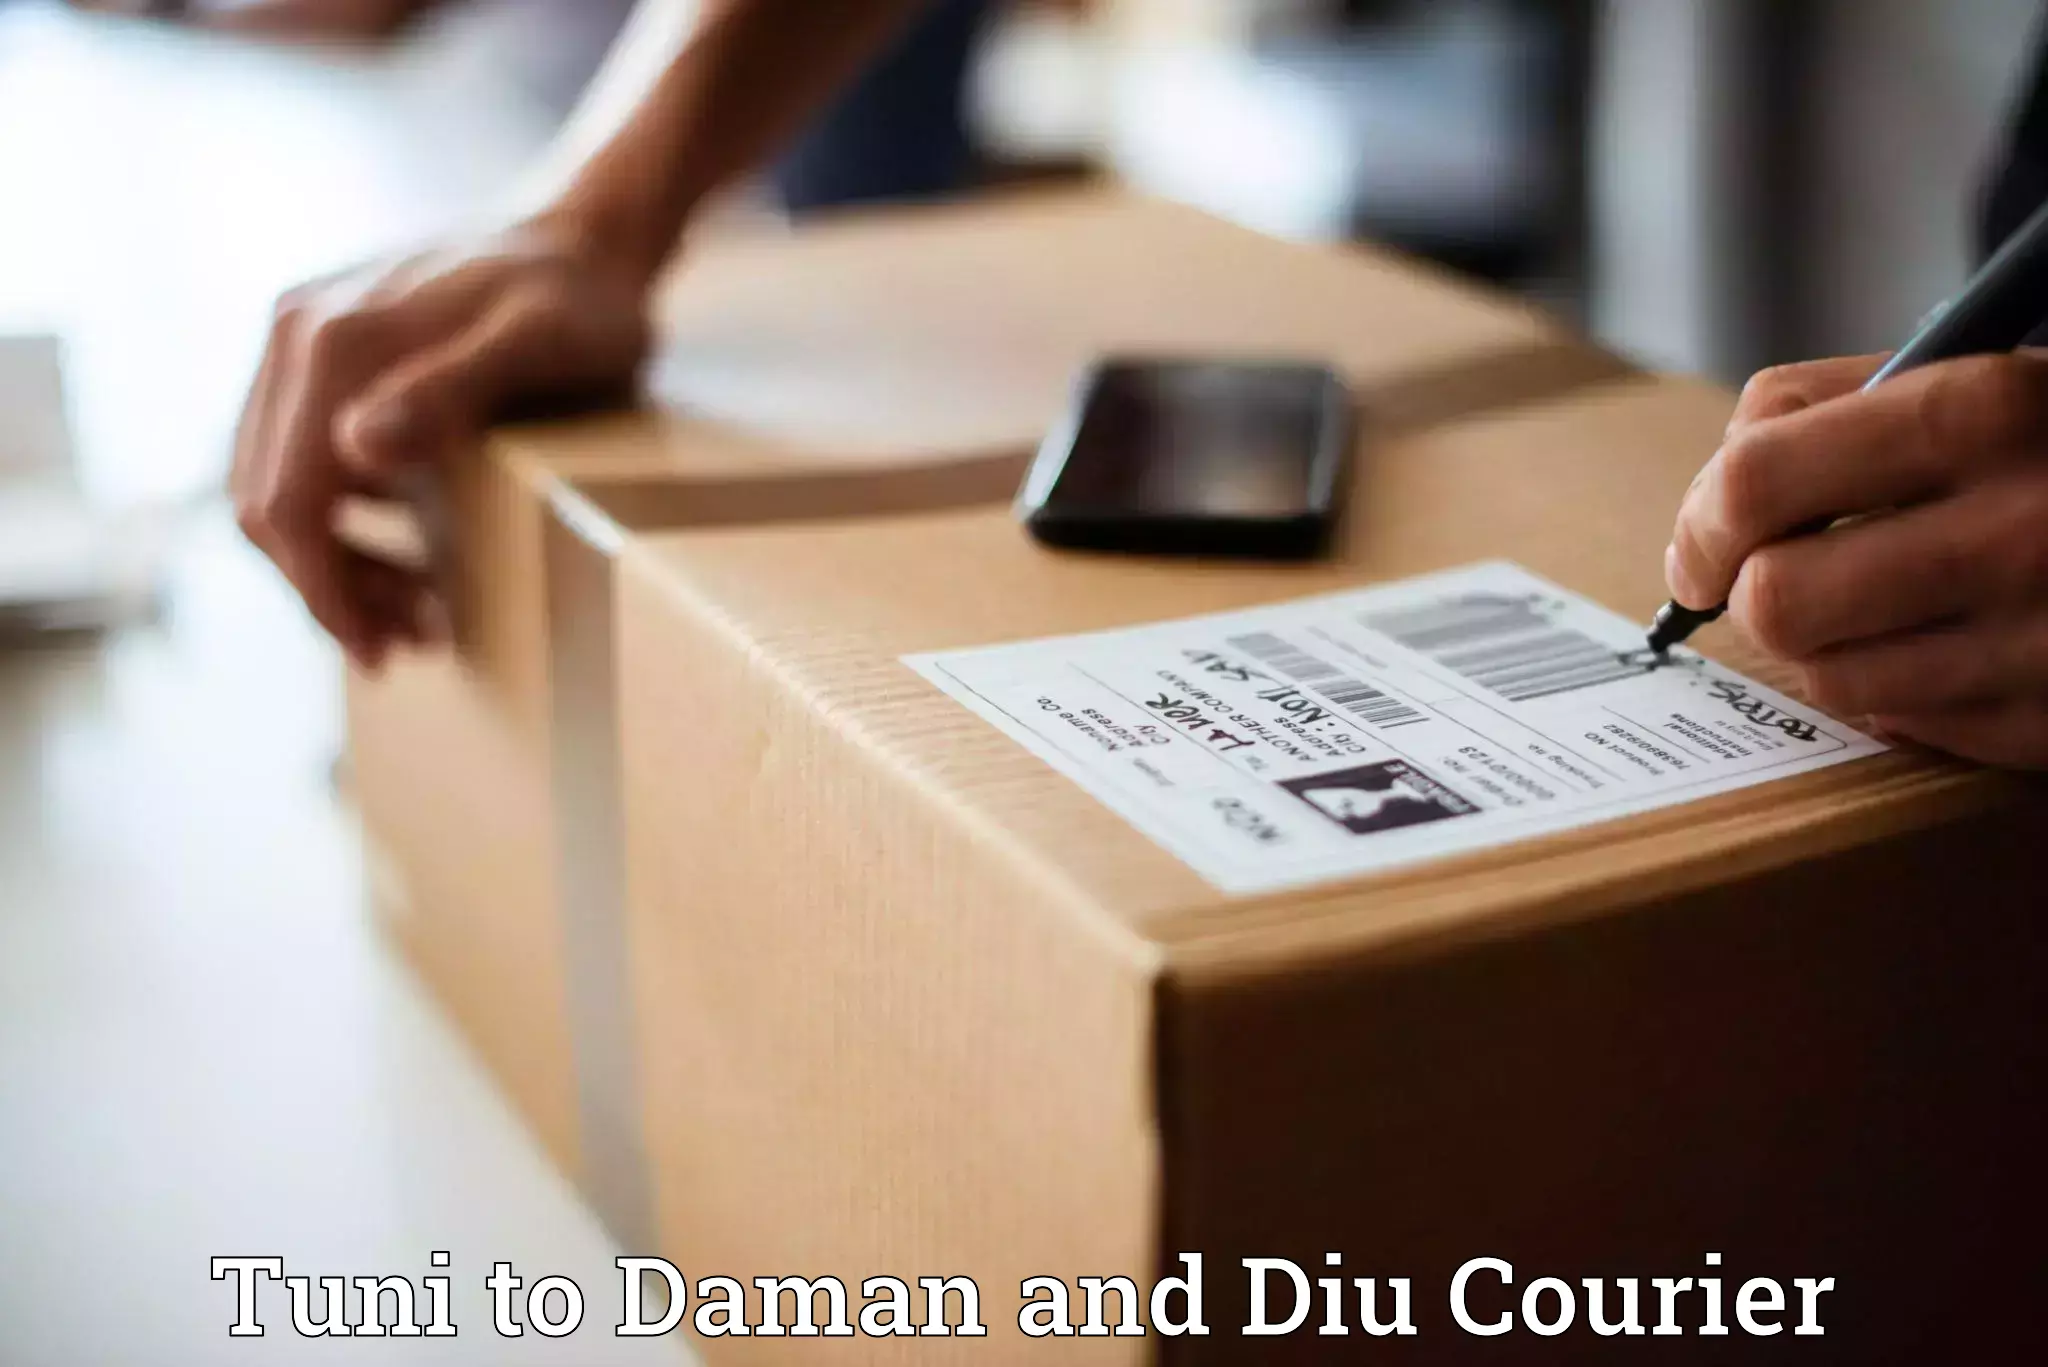 Customizable shipping options in Tuni to Diu